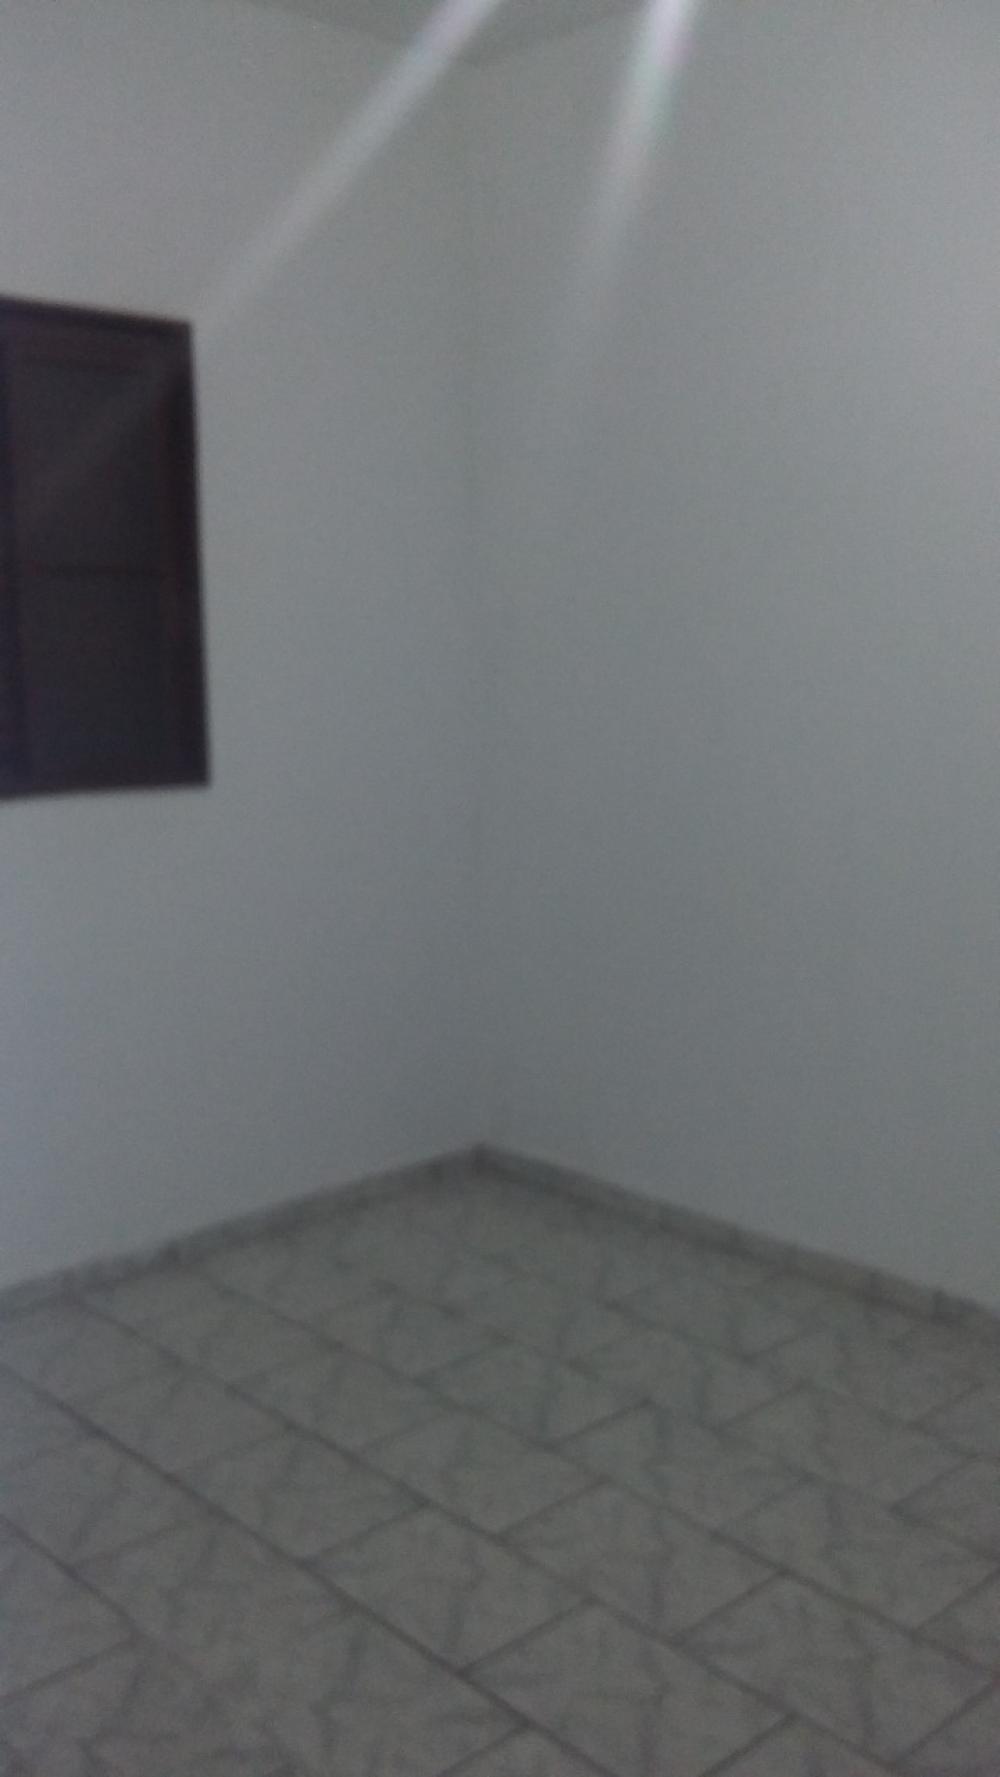 Alugar Casa / Padrão em São José do Rio Preto R$ 950,00 - Foto 7